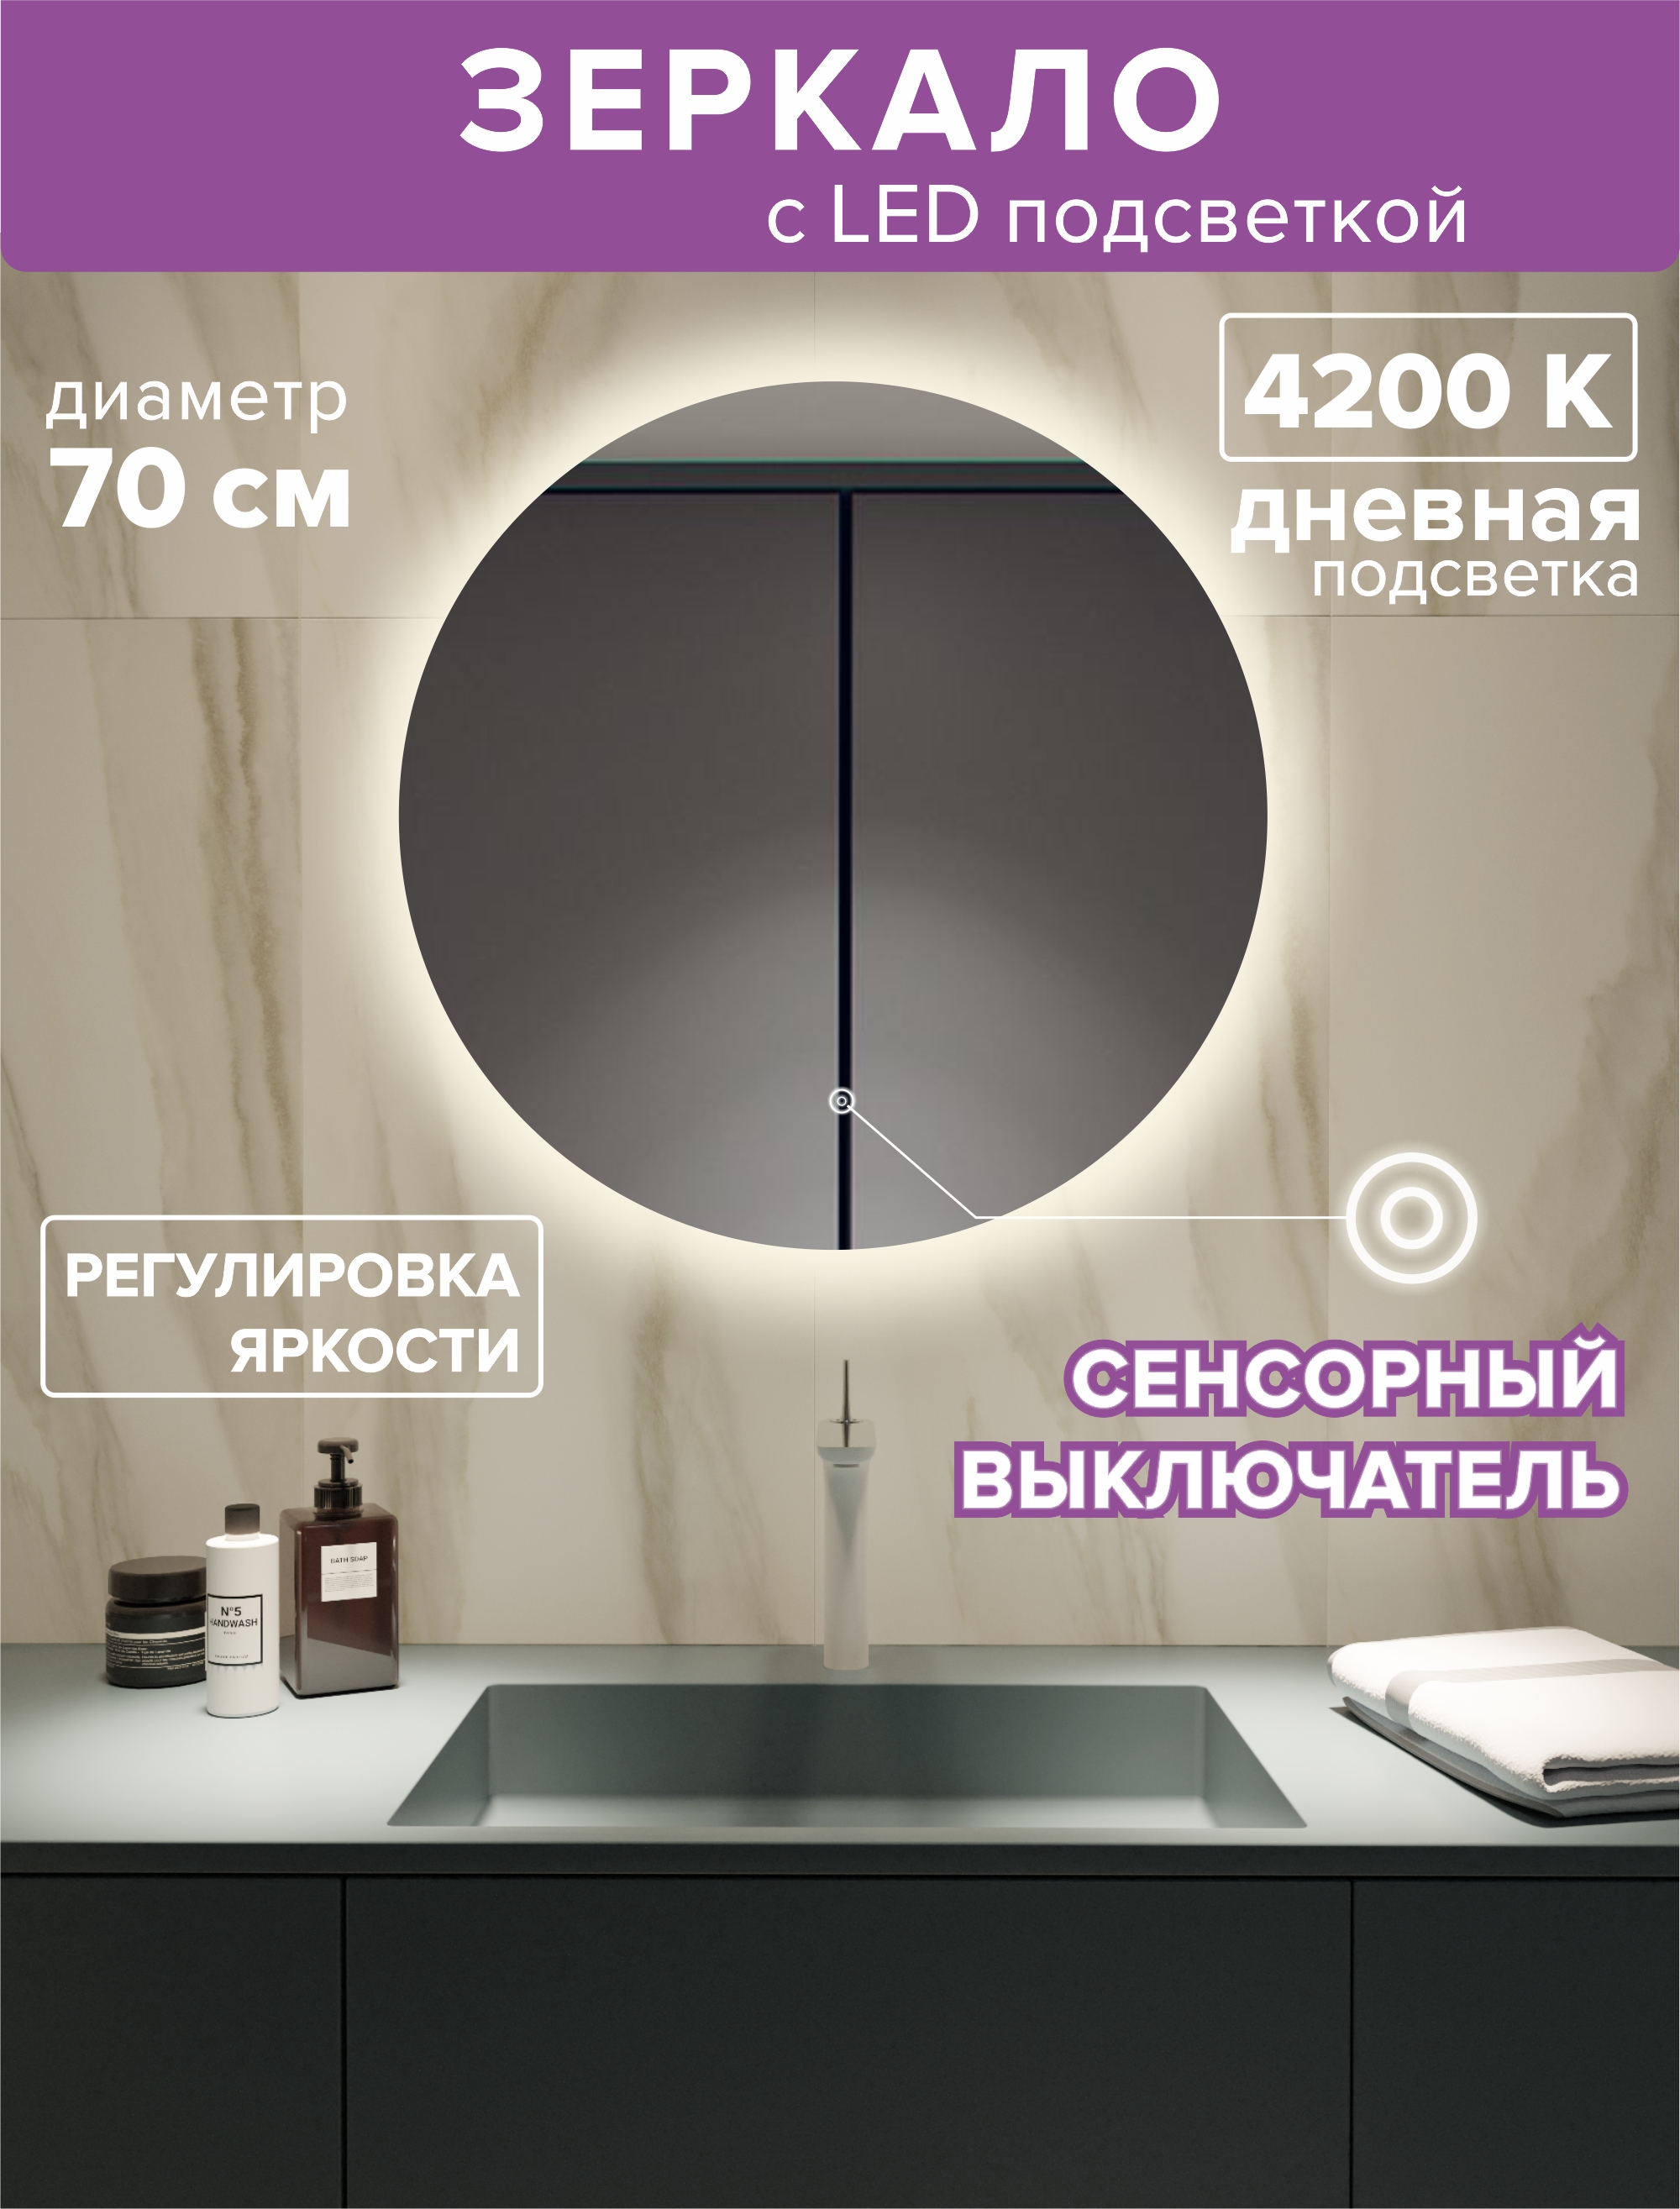 зеркало с подсветкой круглое 70см посдветка дневная 4200к Зеркало с подсветкой круглое 70см. Посдветка дневная (4200К)